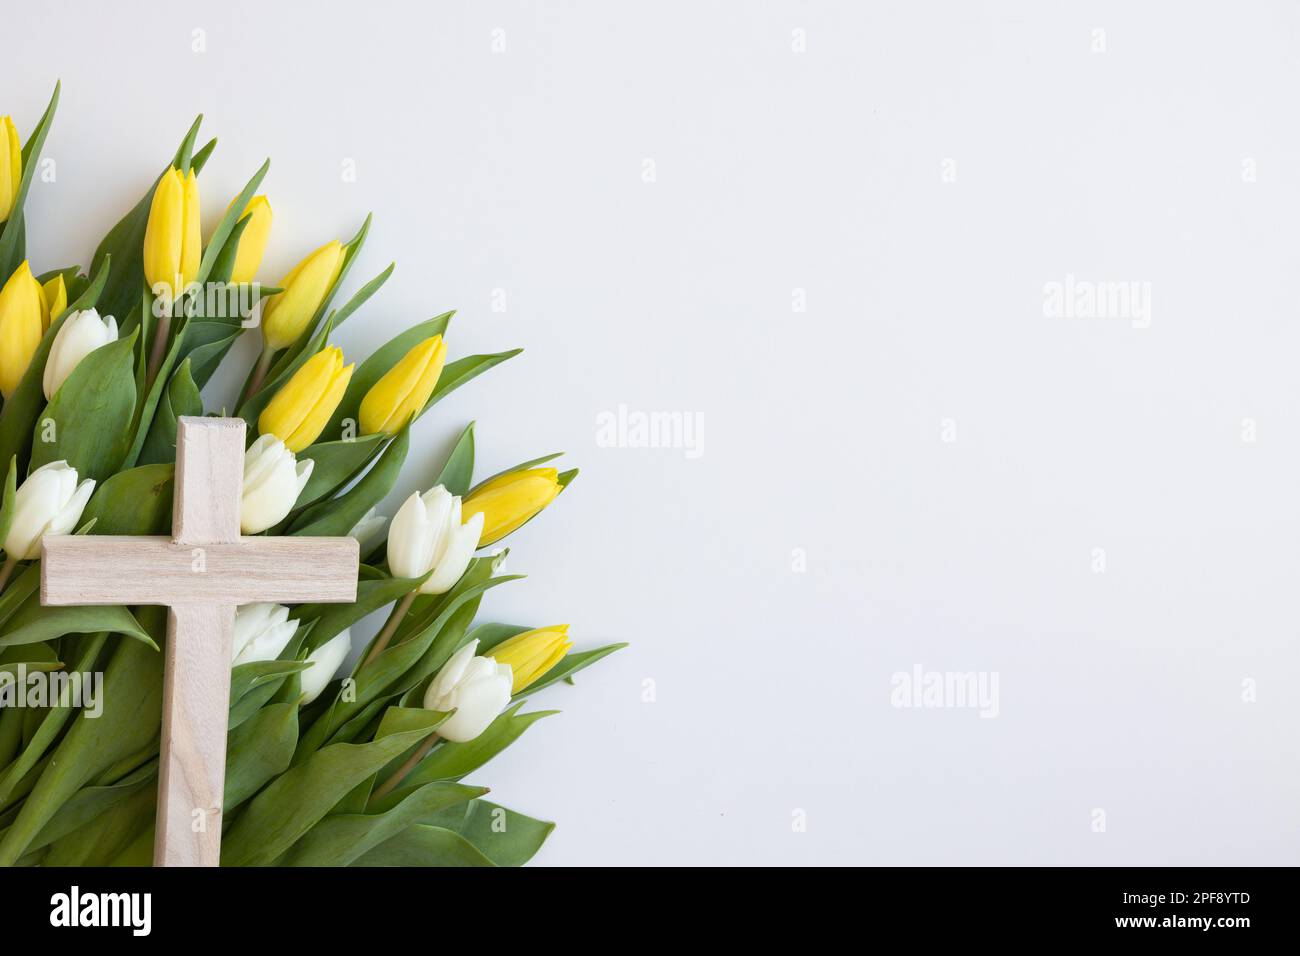 Semplice croce cristiana in legno con tulipani gialli e bianchi su sfondo bianco con spazio copia Foto Stock